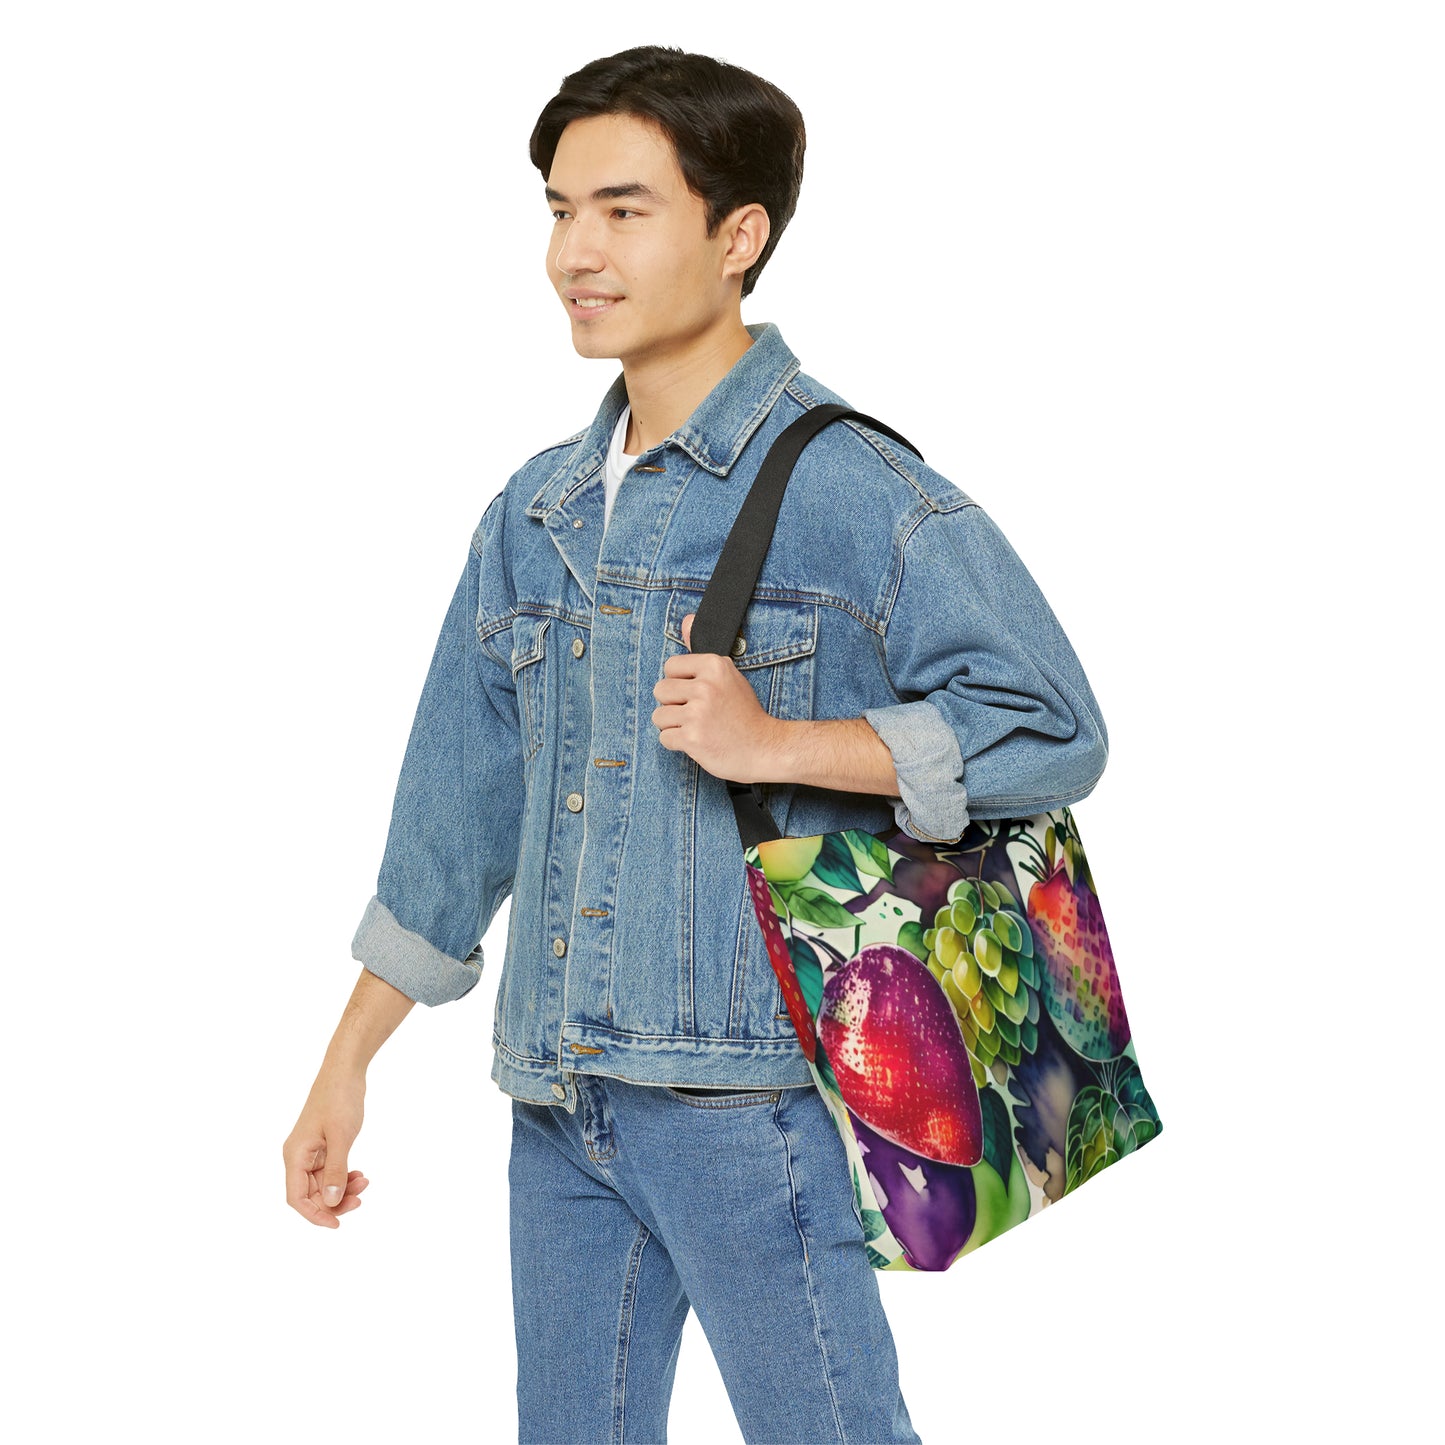 Adjustable Tote Bag, Fruit Pattern